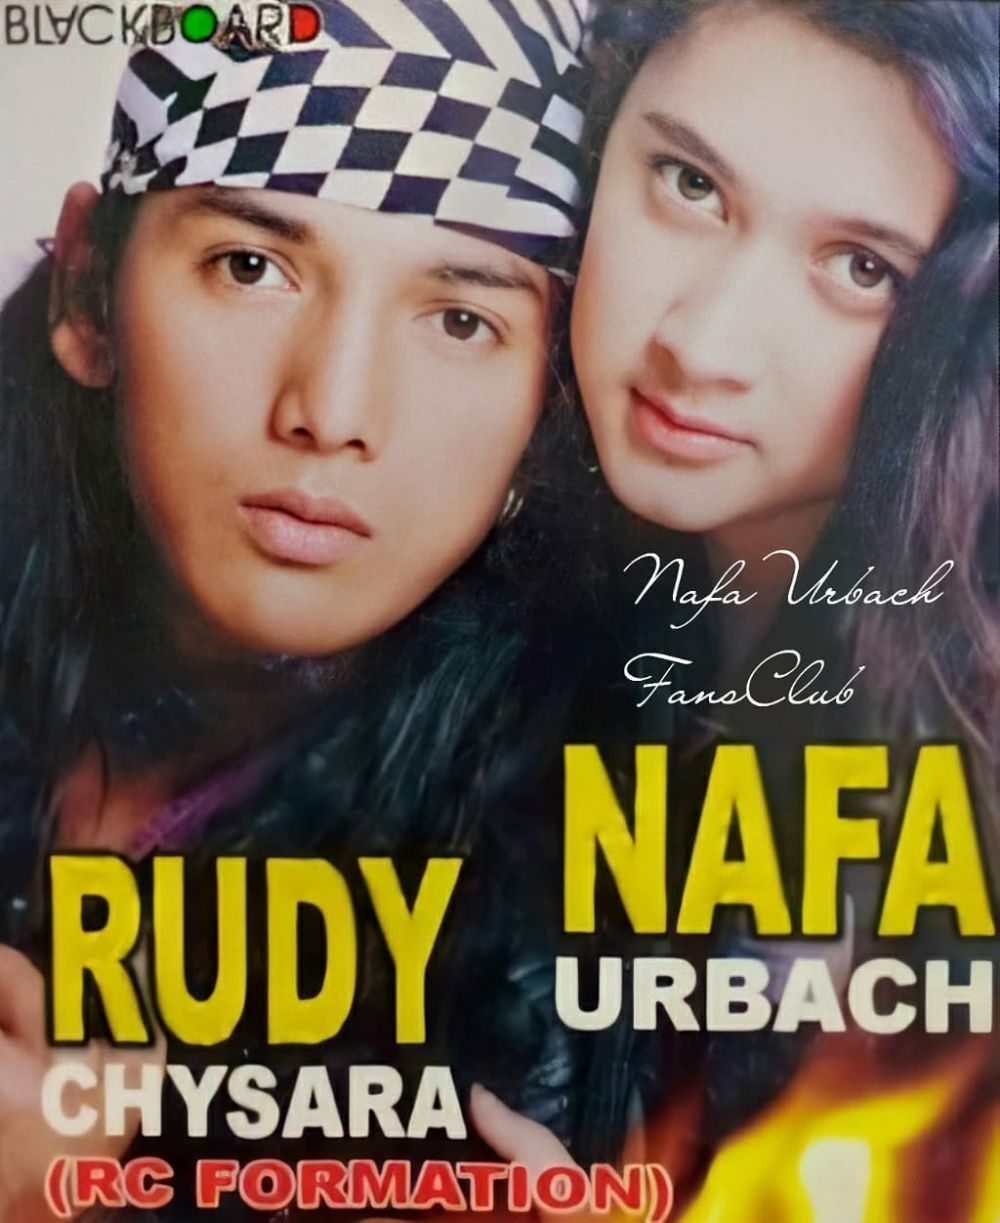 9 Potret masa muda Nafa Urbach, pernah duet dengan Rudy Chysara